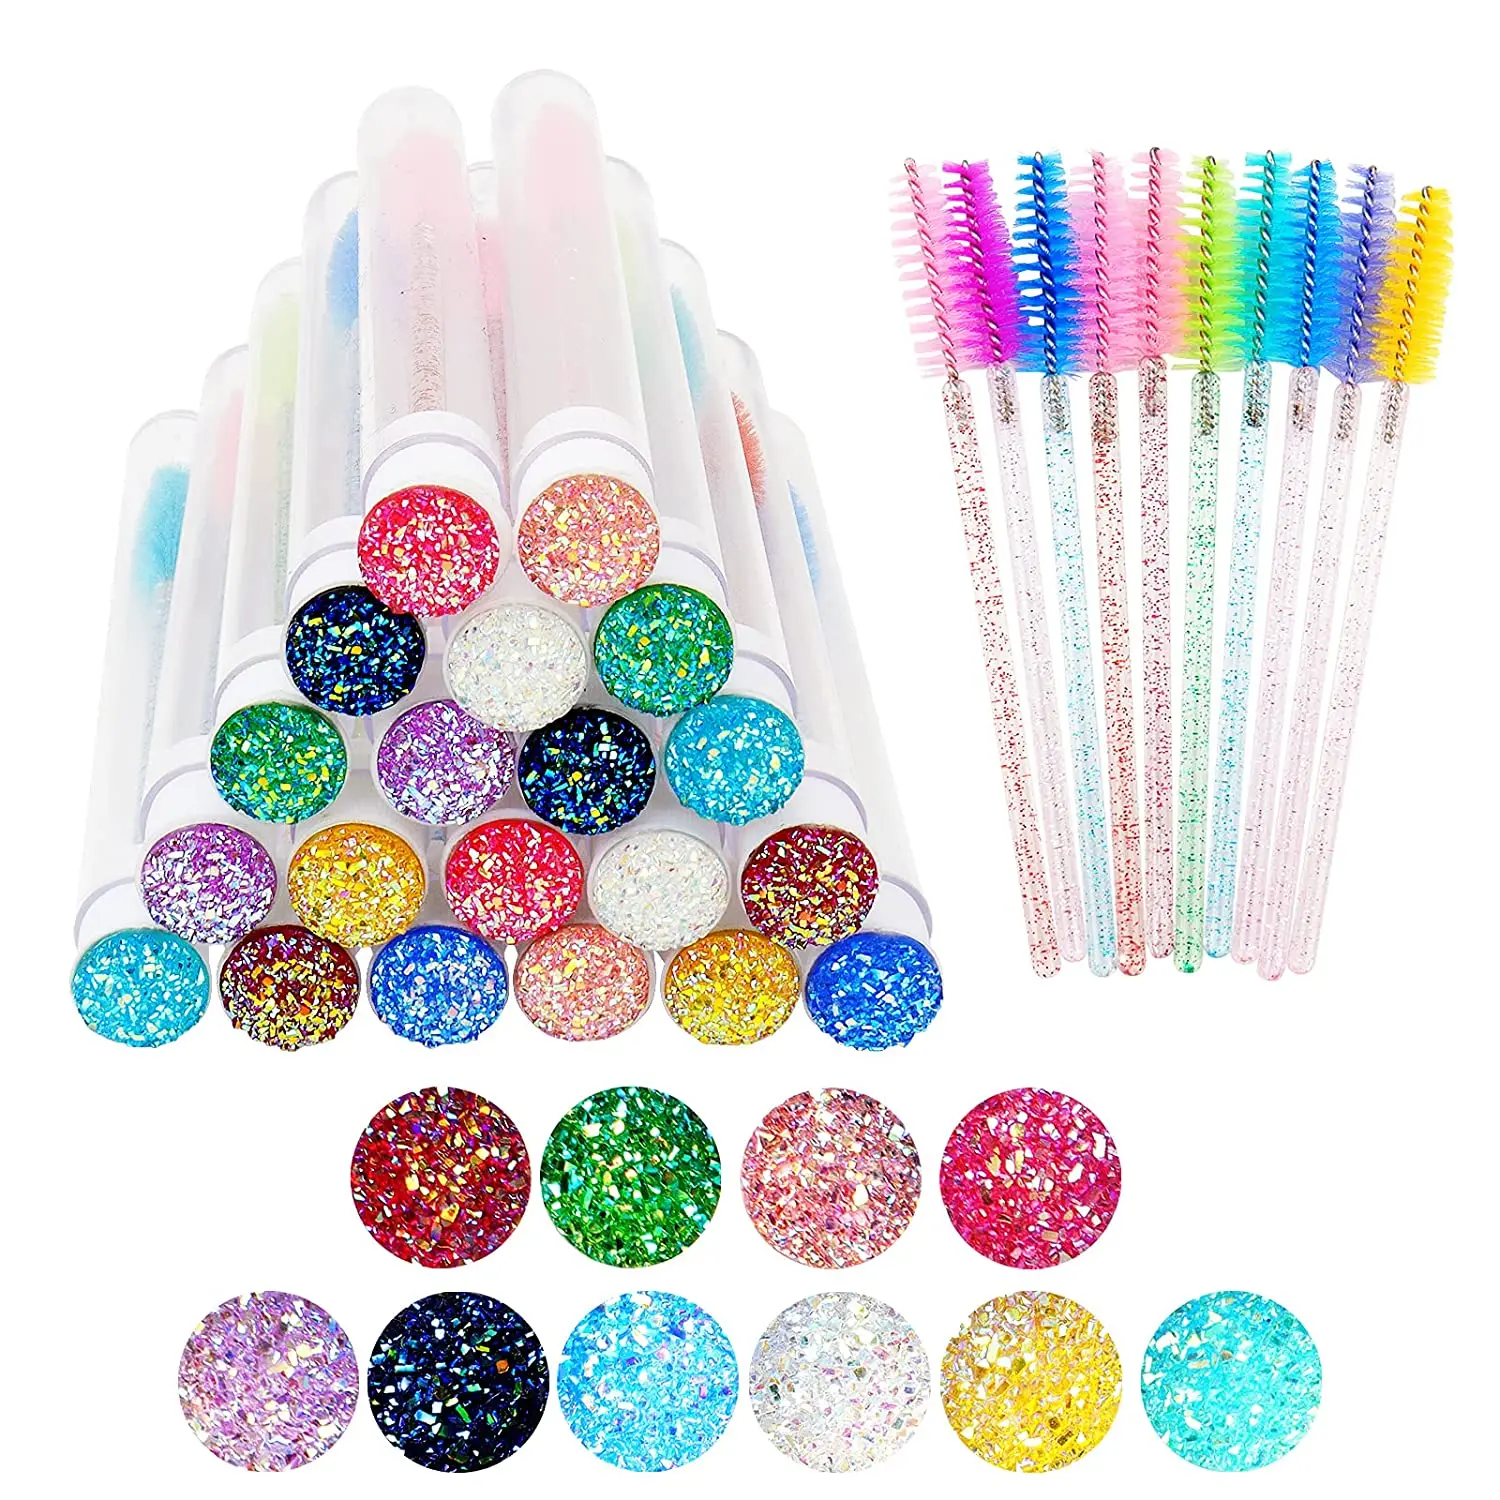 

Disposable glitter eyelash mascara brushes empty mascara wands tubes with brush mascara lash wands, Pink,blue,pink,purple,green,black